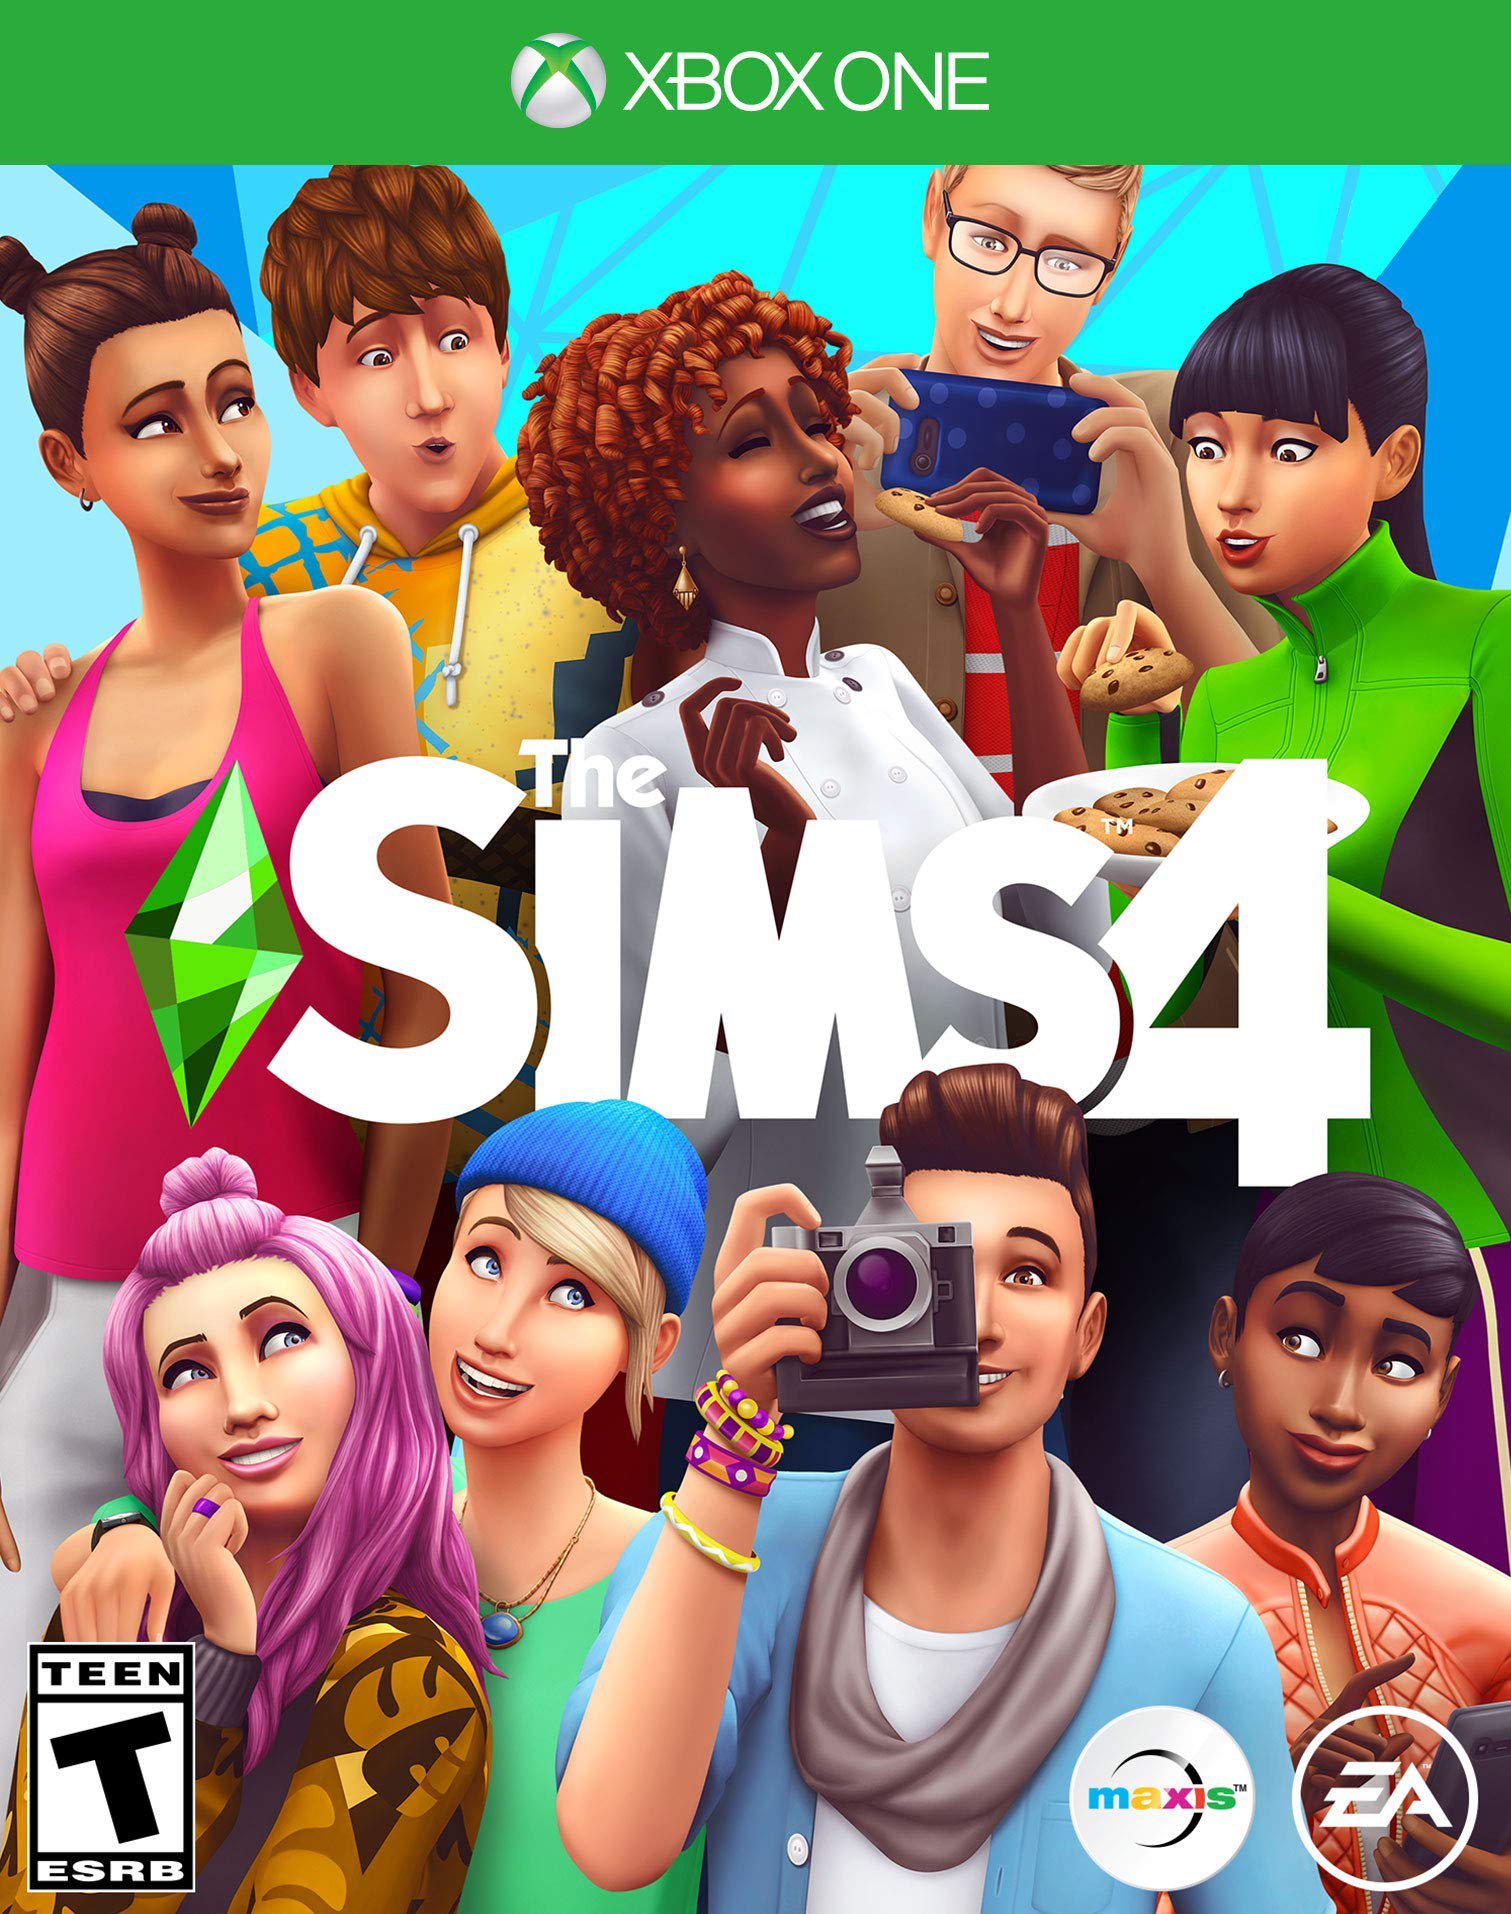 The Sims 4 modo construção com cheats - Ps4 